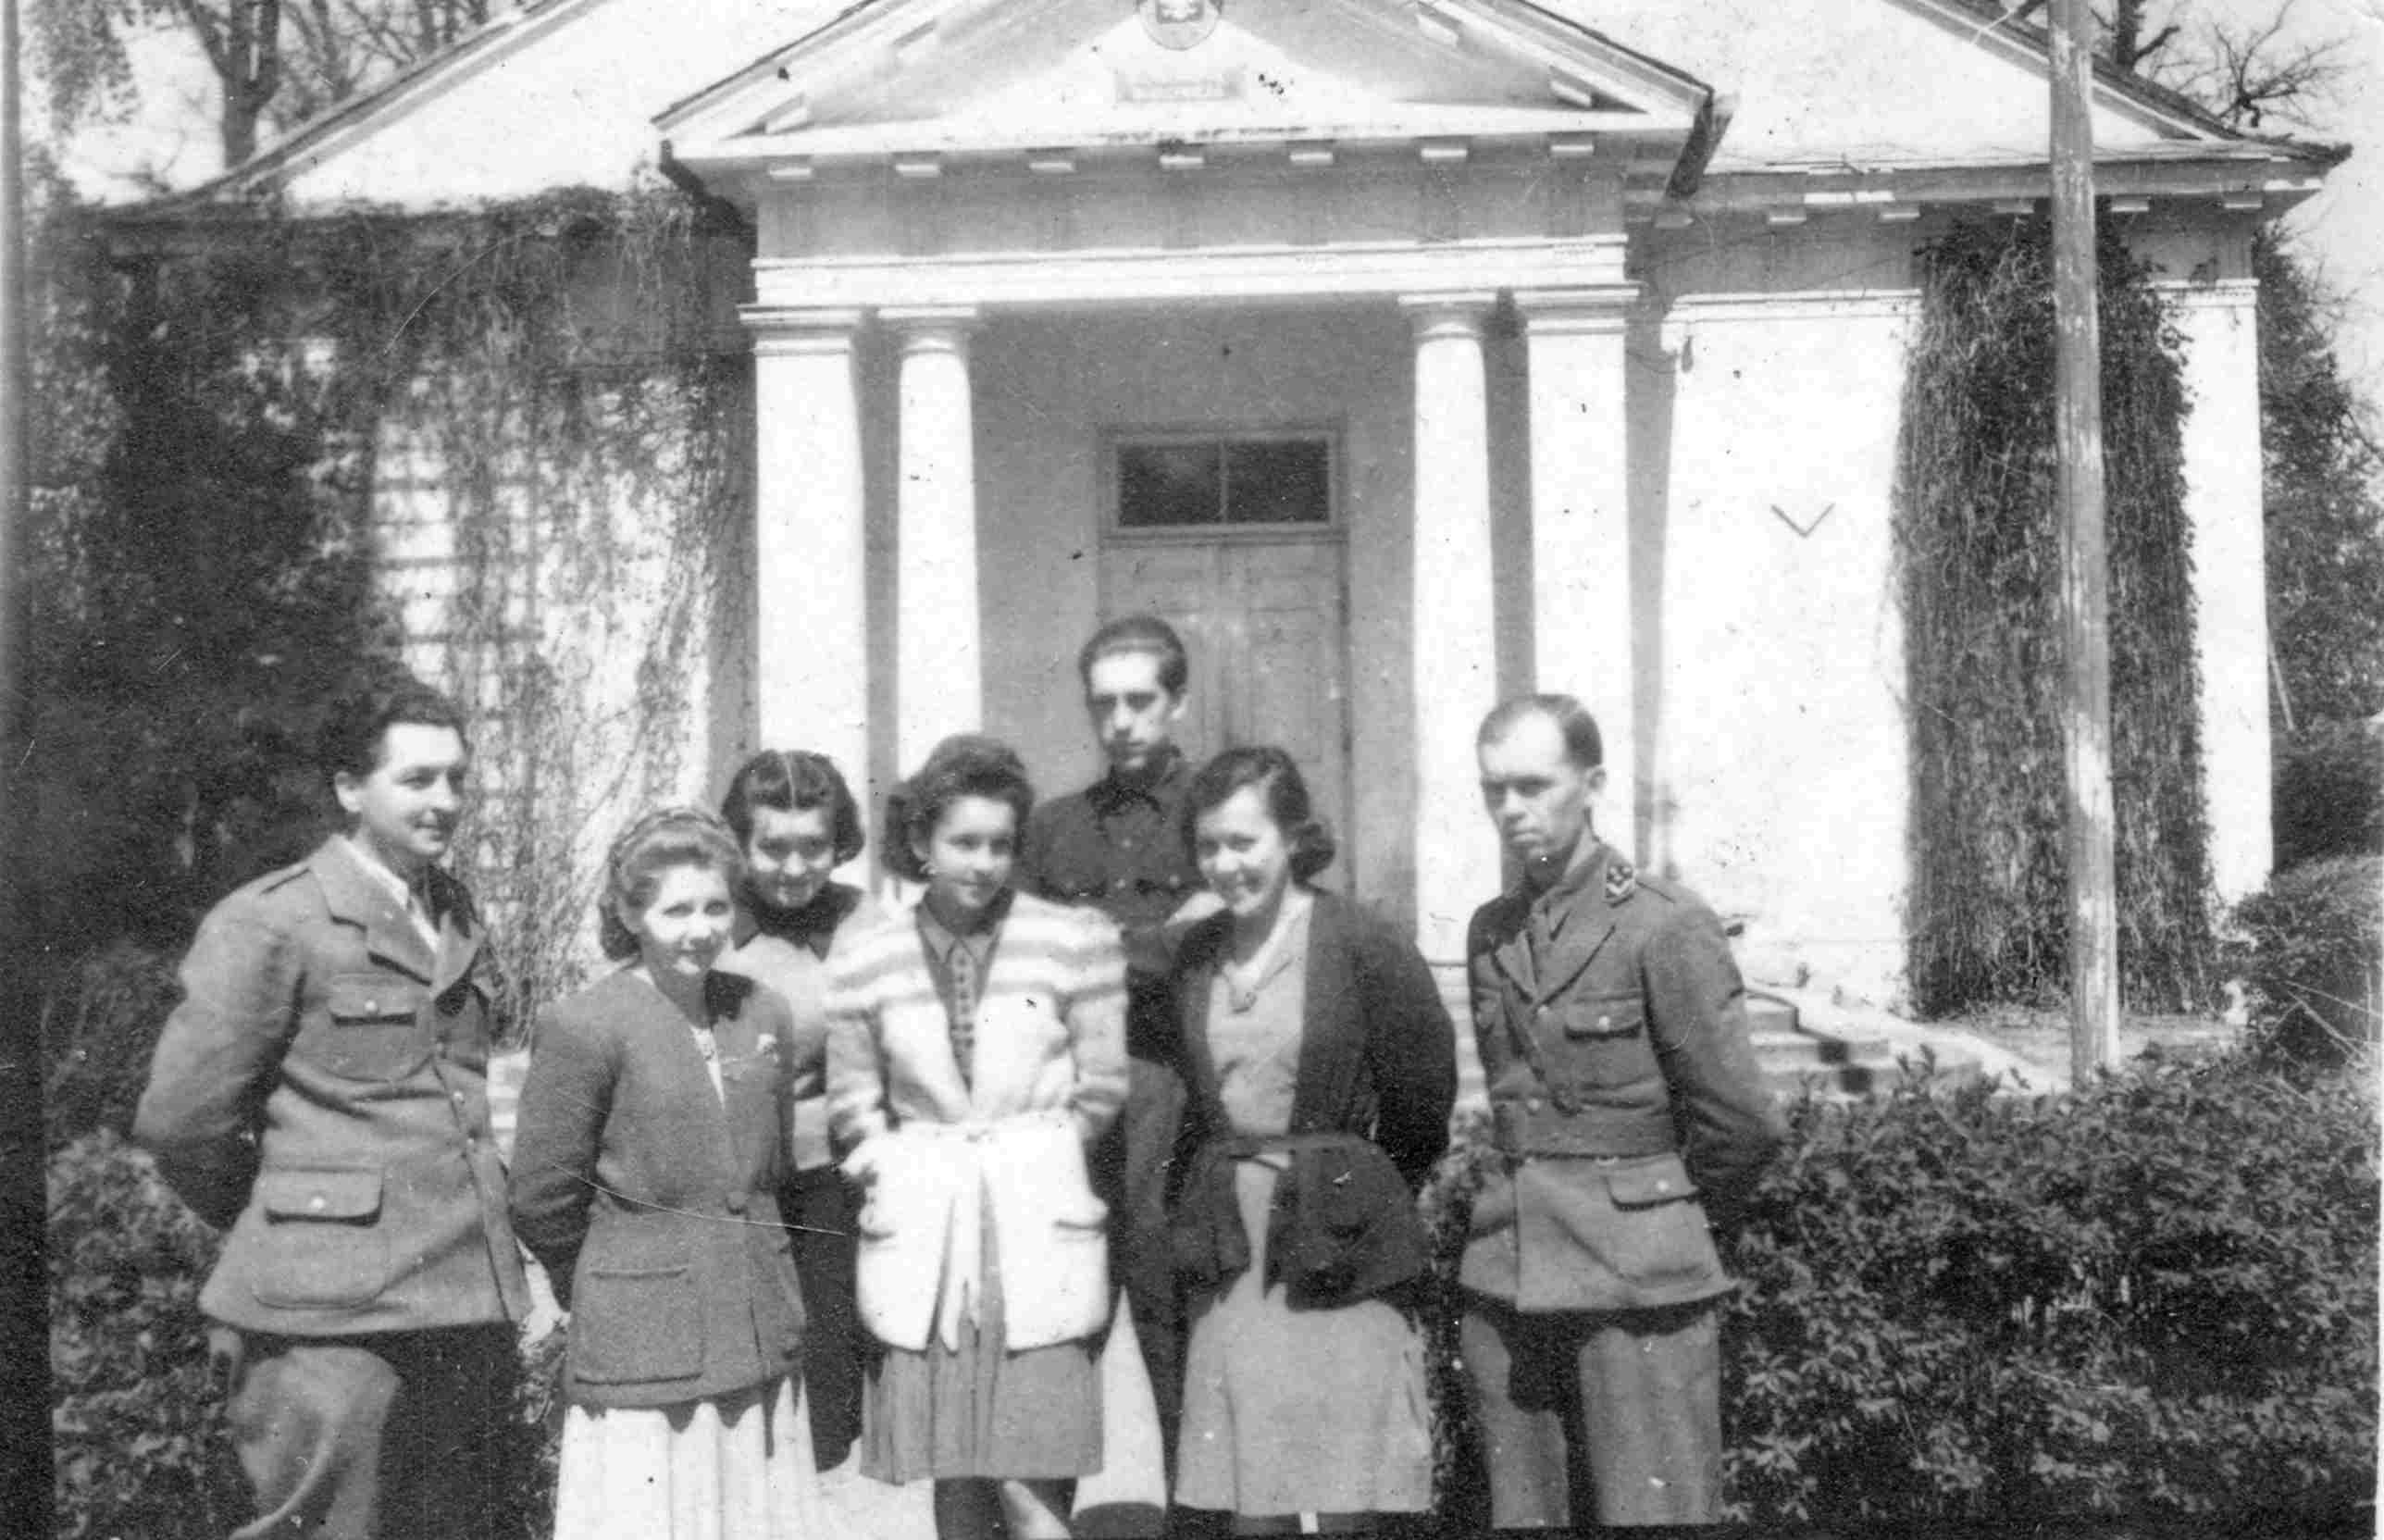 1. Pracownicy Nadleśnictwa Białowieża w 1946 roku. Ryszard Kubinkiewicz stoi trzeci z prawej (z tyłu)